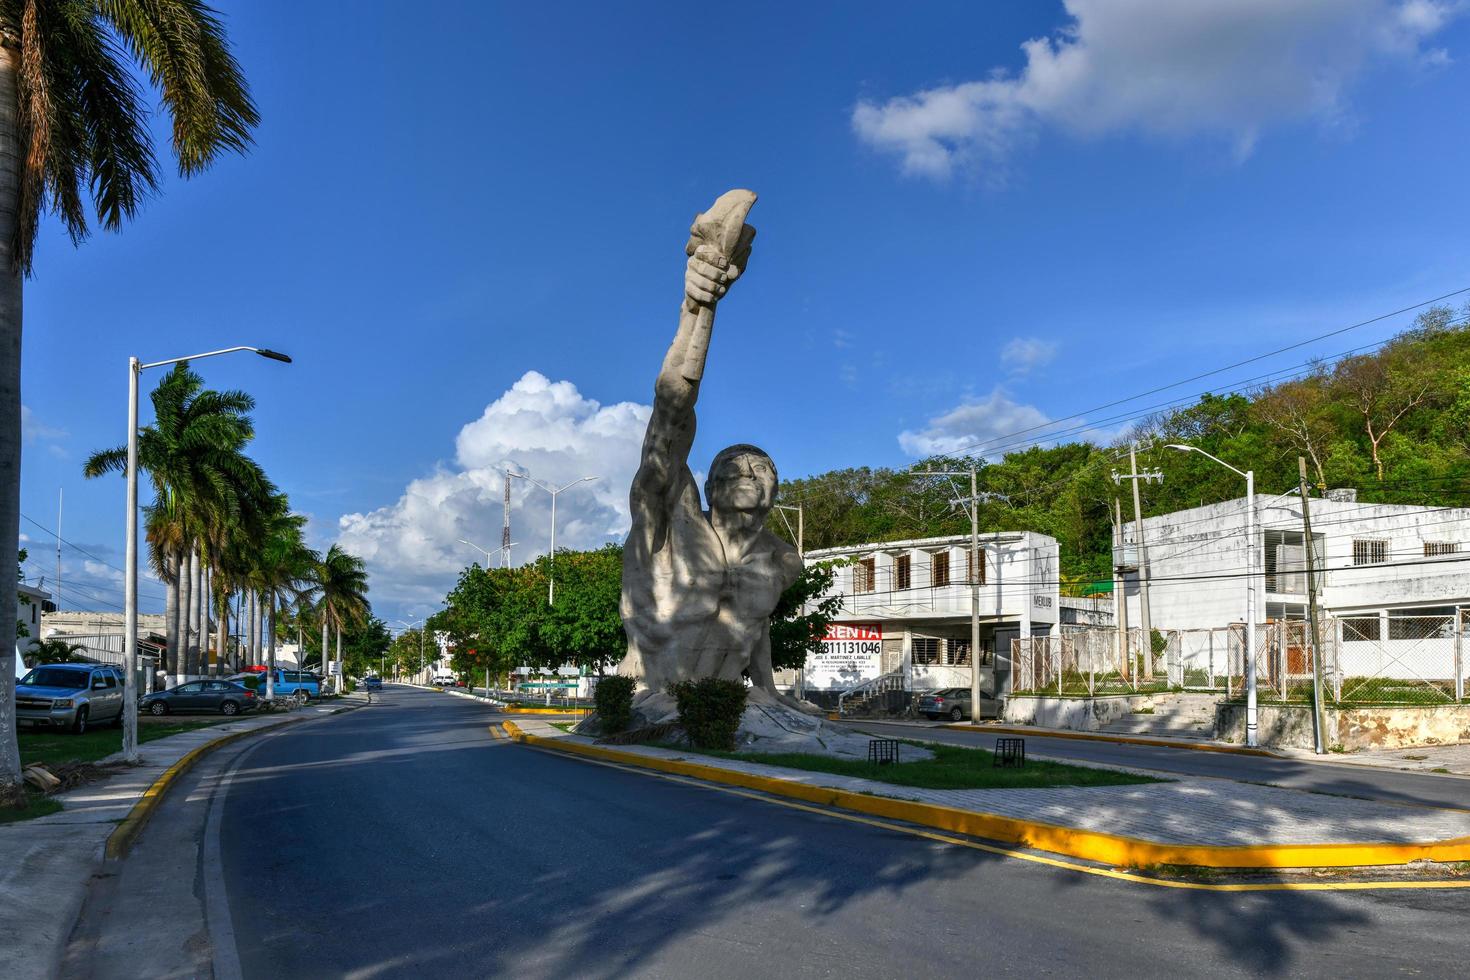 campeche, mexique - 25 mai 2021 - monument de résurgence à campeche, mexique. situé le long de l'autoroute campeche-lerma. photo